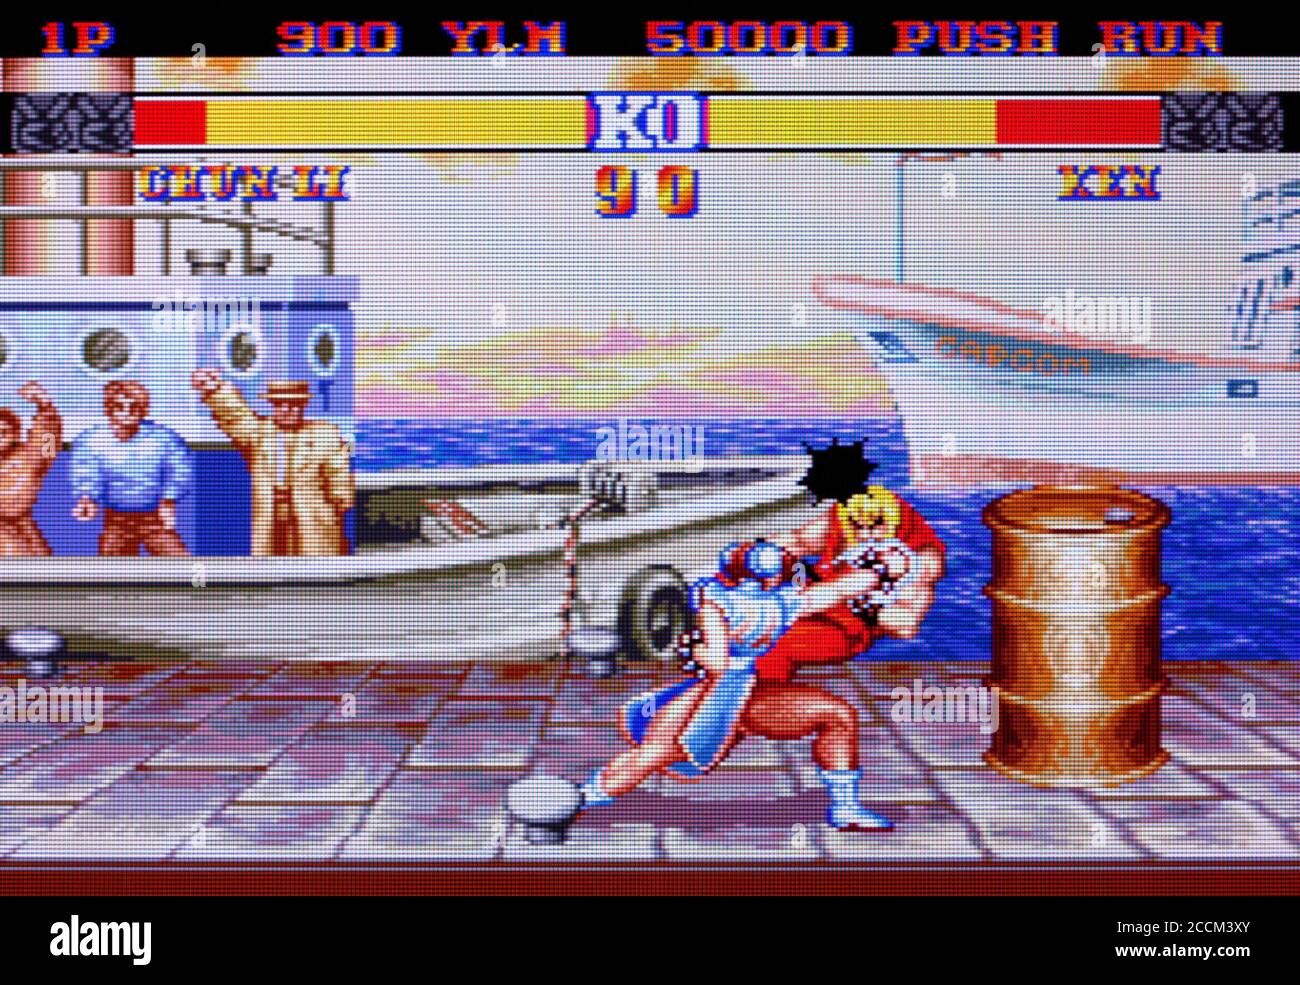 Street Fighter II 2 - Champion Edition - motore per PC Videogioco - solo per uso editoriale Foto Stock